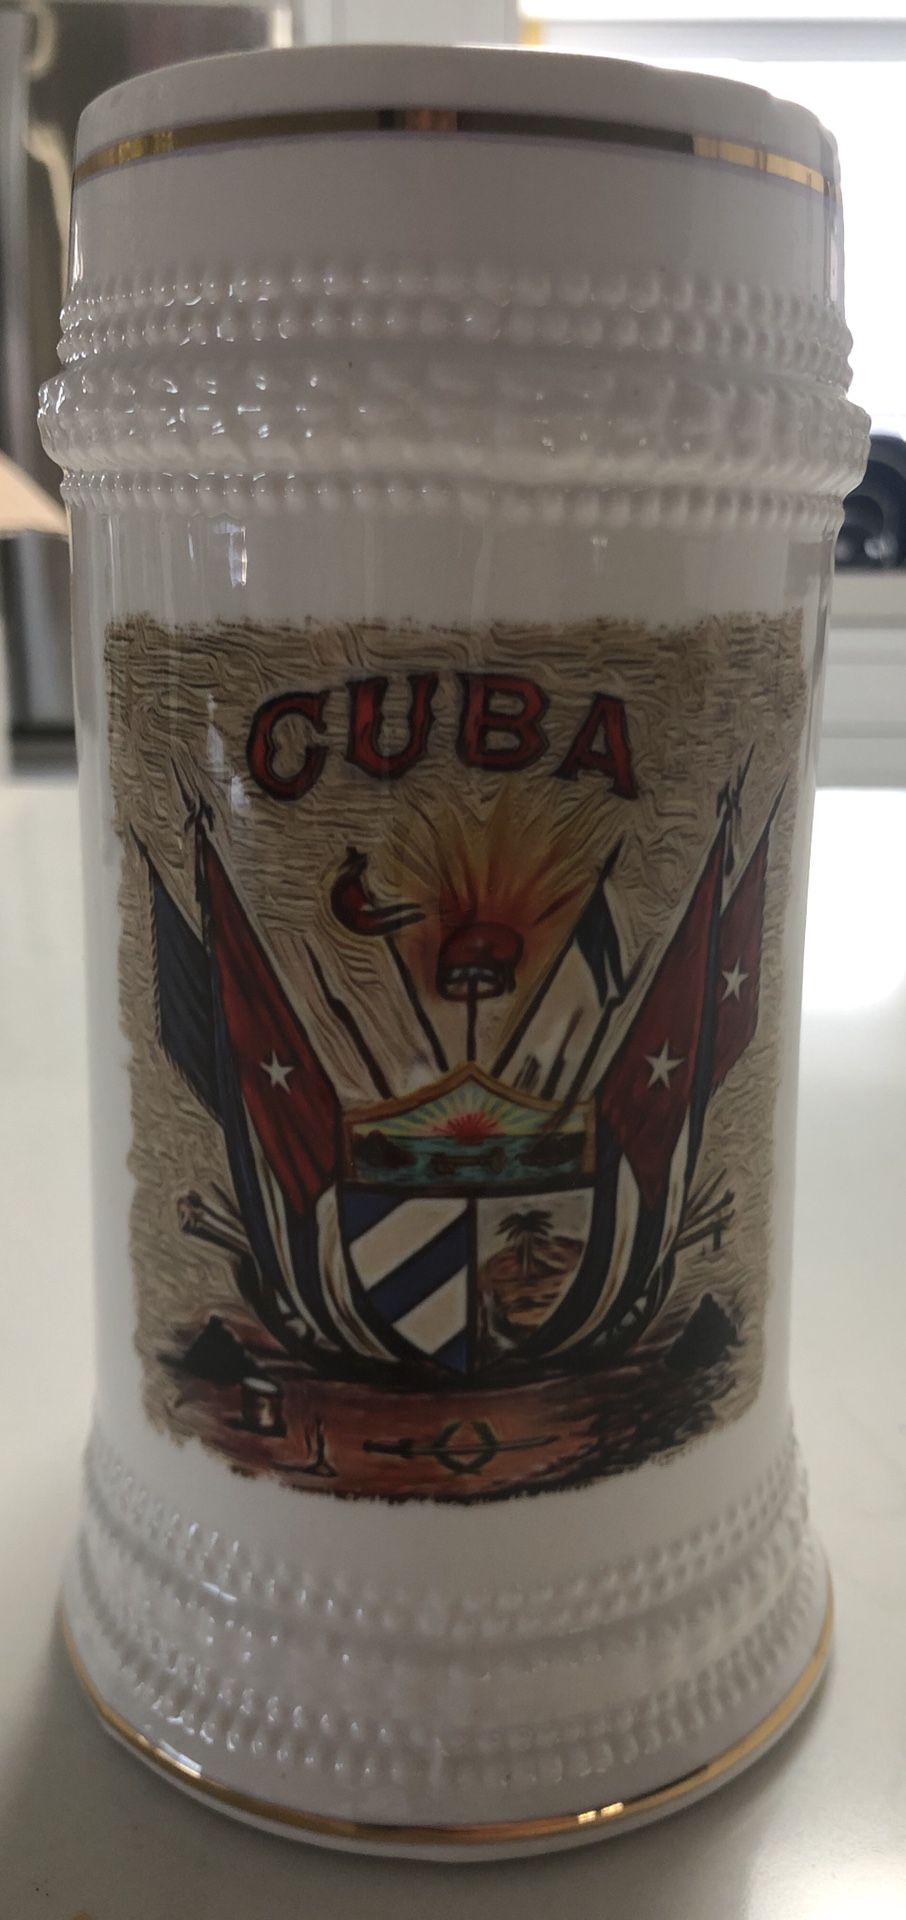 Cuba flag ceramic beer stein A7